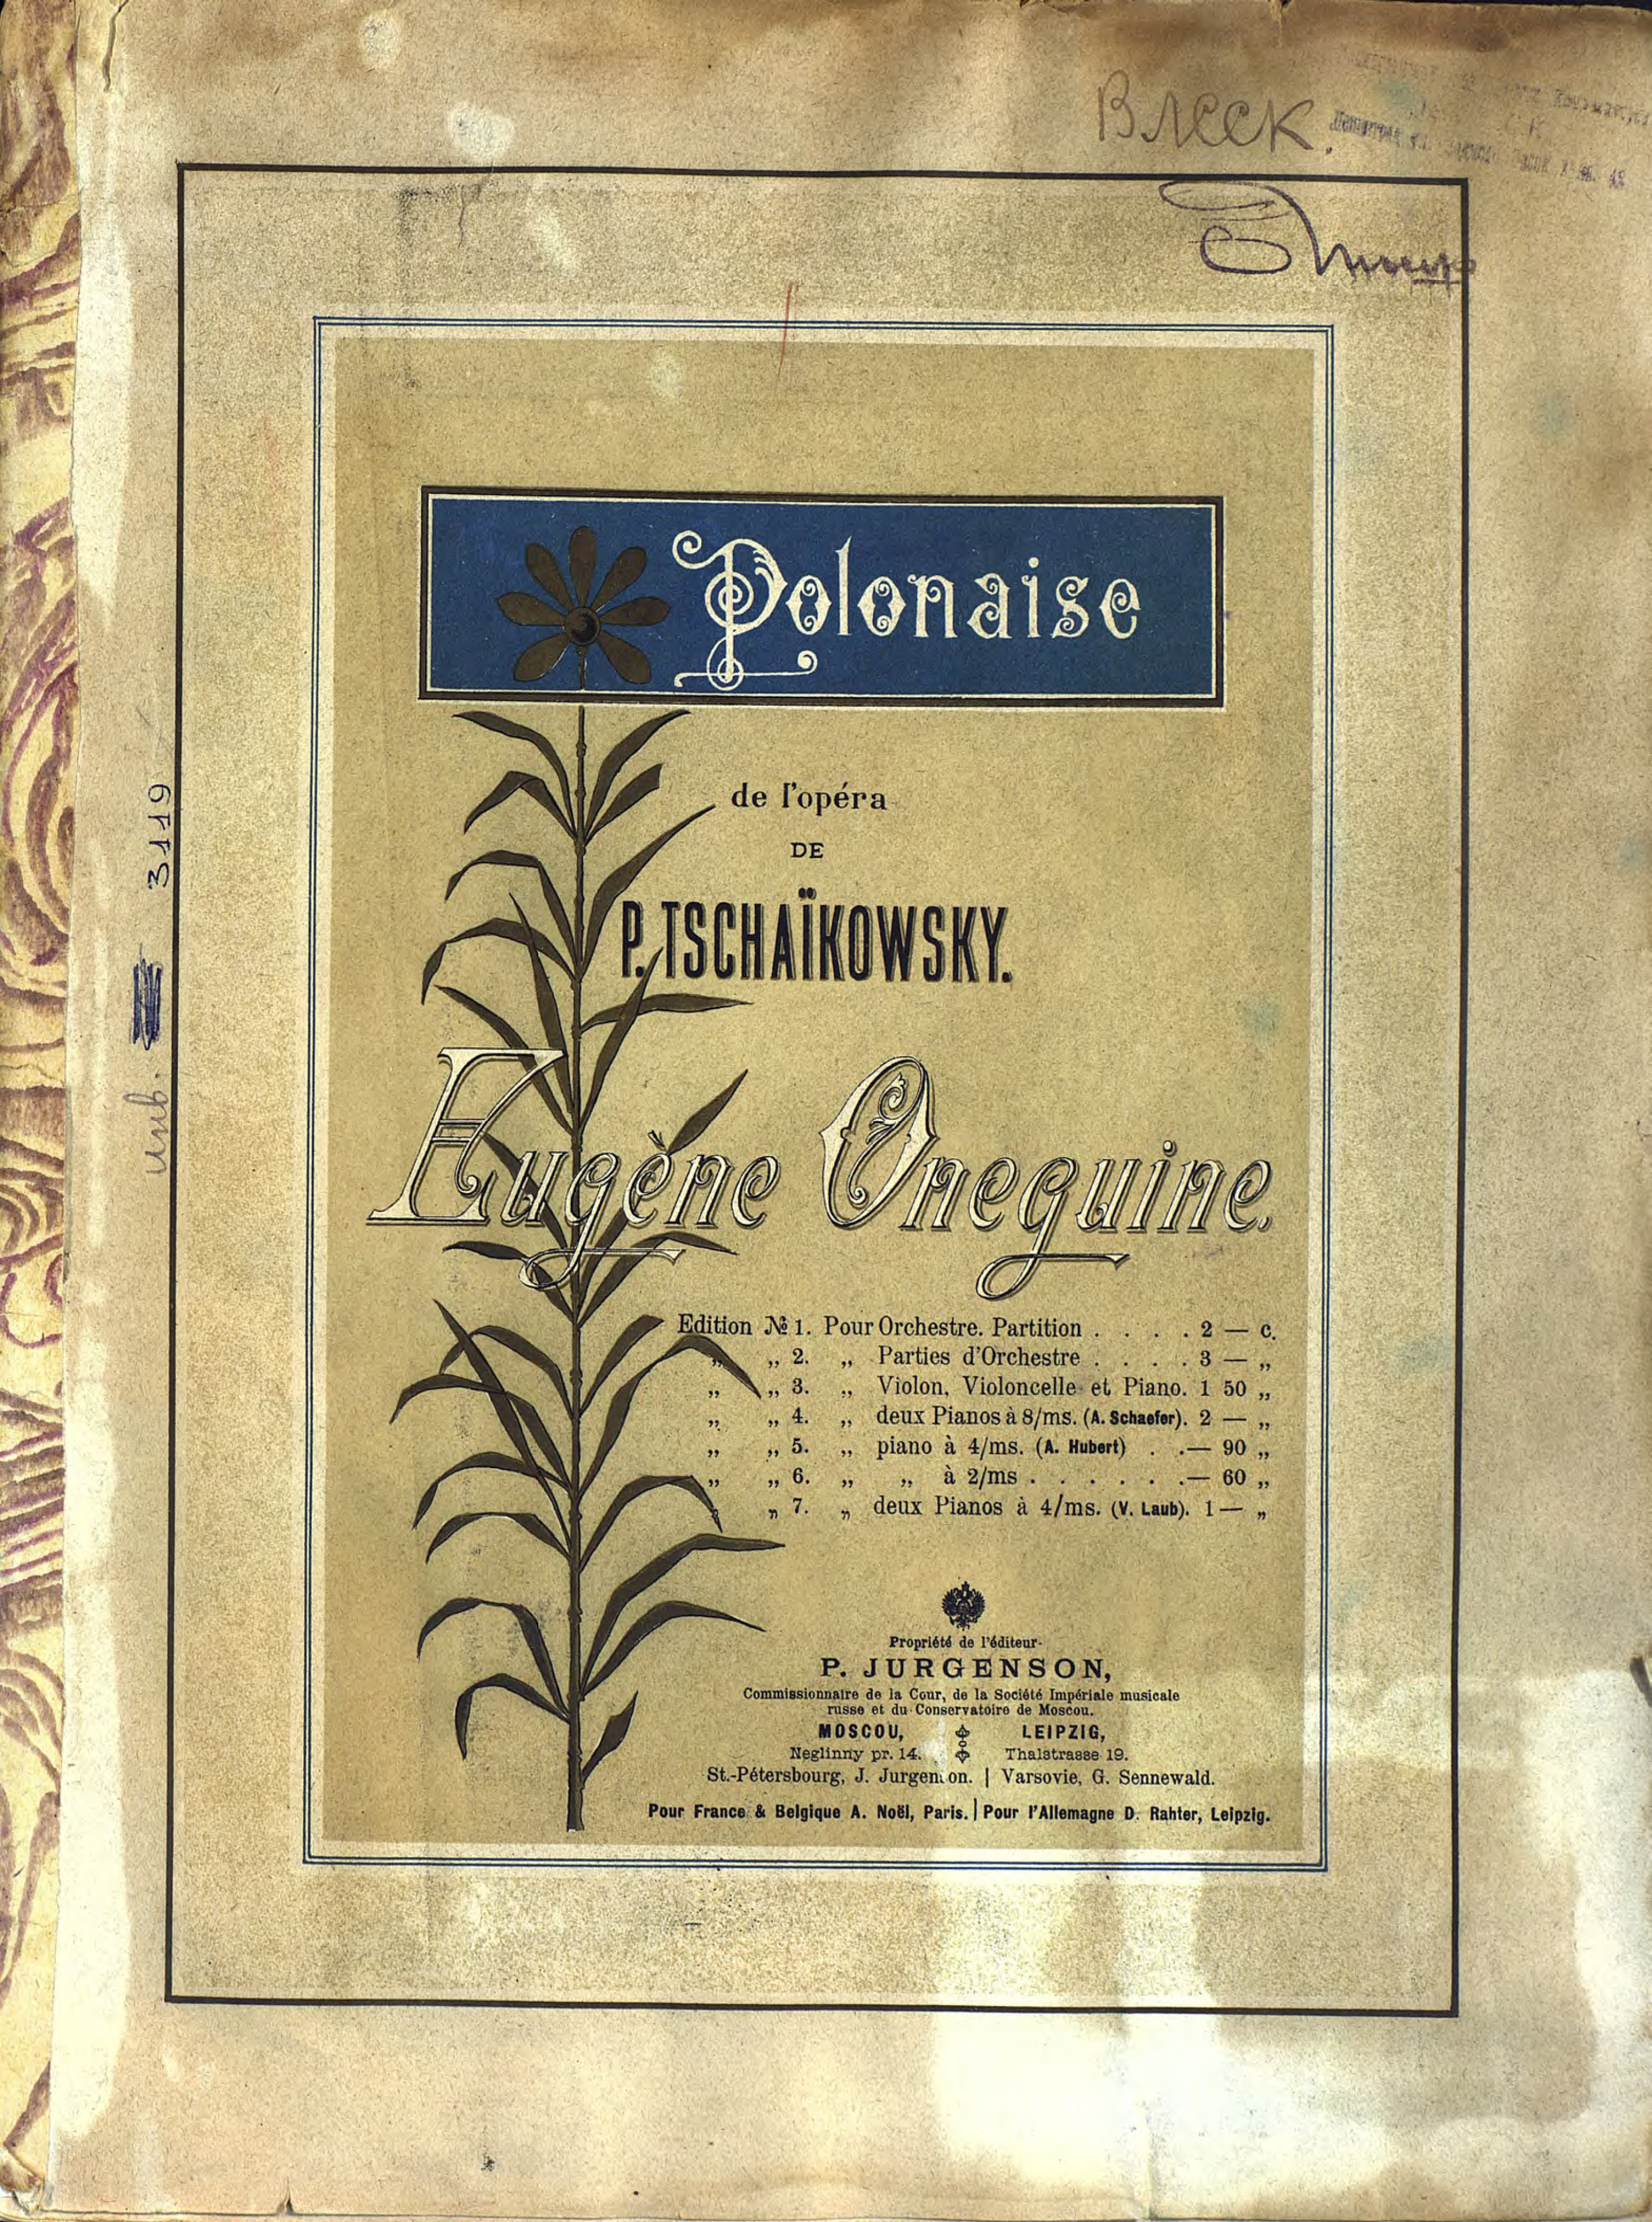 Polonaise de l'opera"Eugene Oneguine"de P. Tschaikowsky